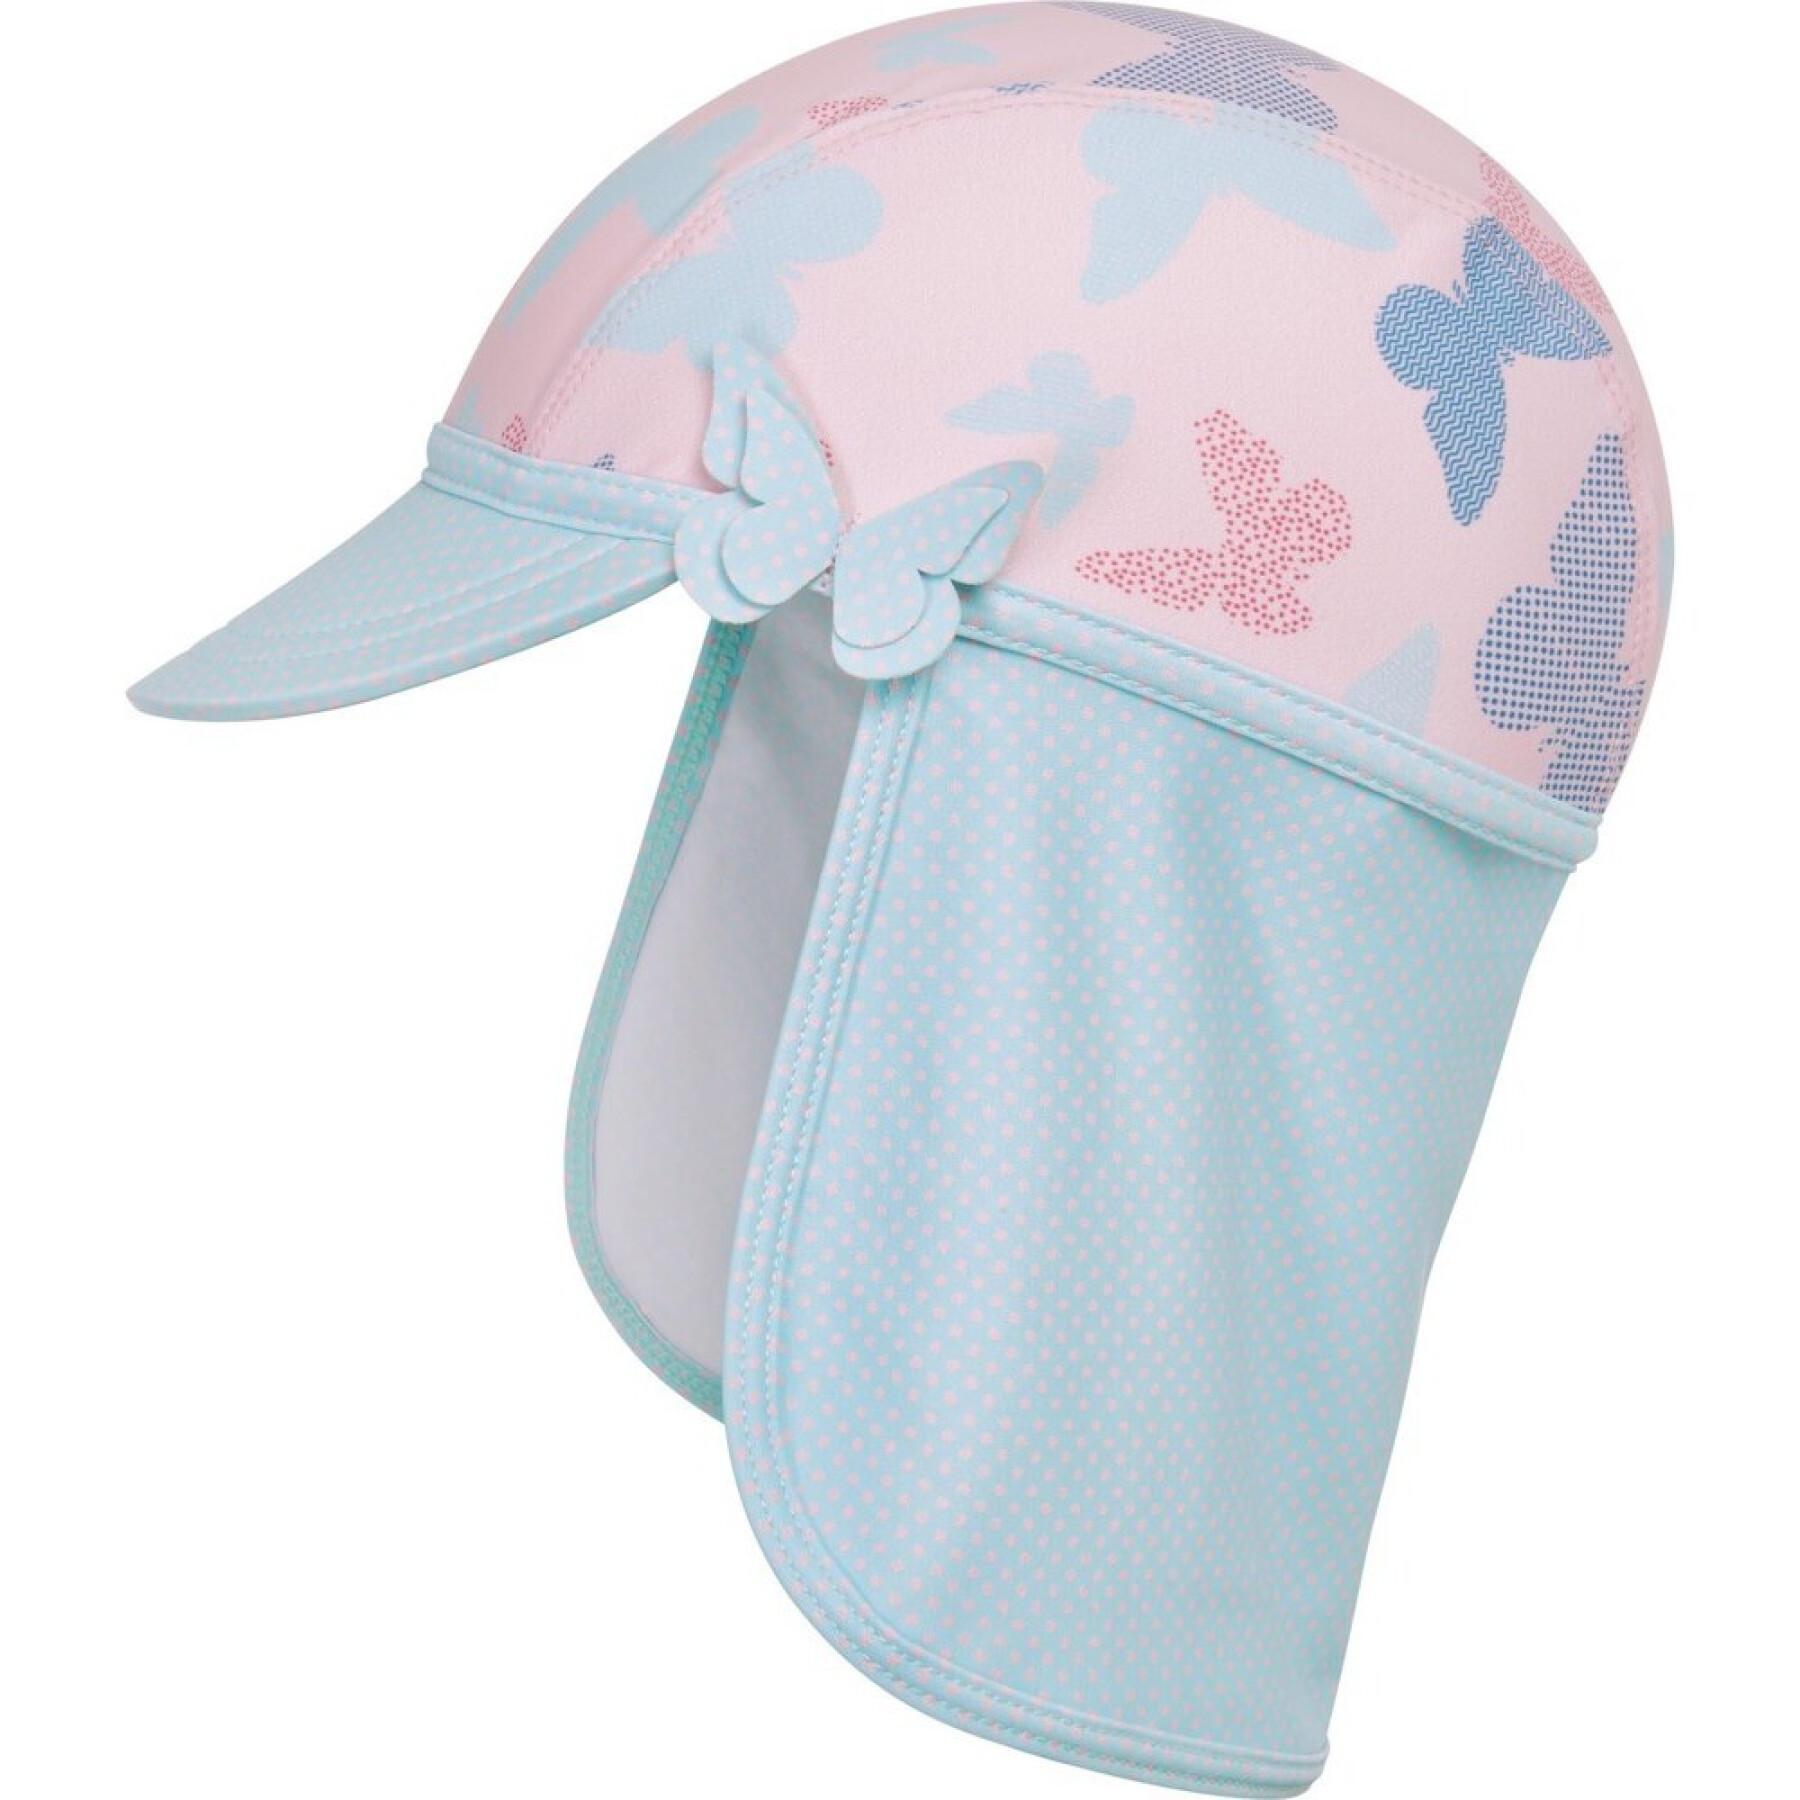 Kappe mit Uv-Schutz, für Kinder Playshoes Butterfly